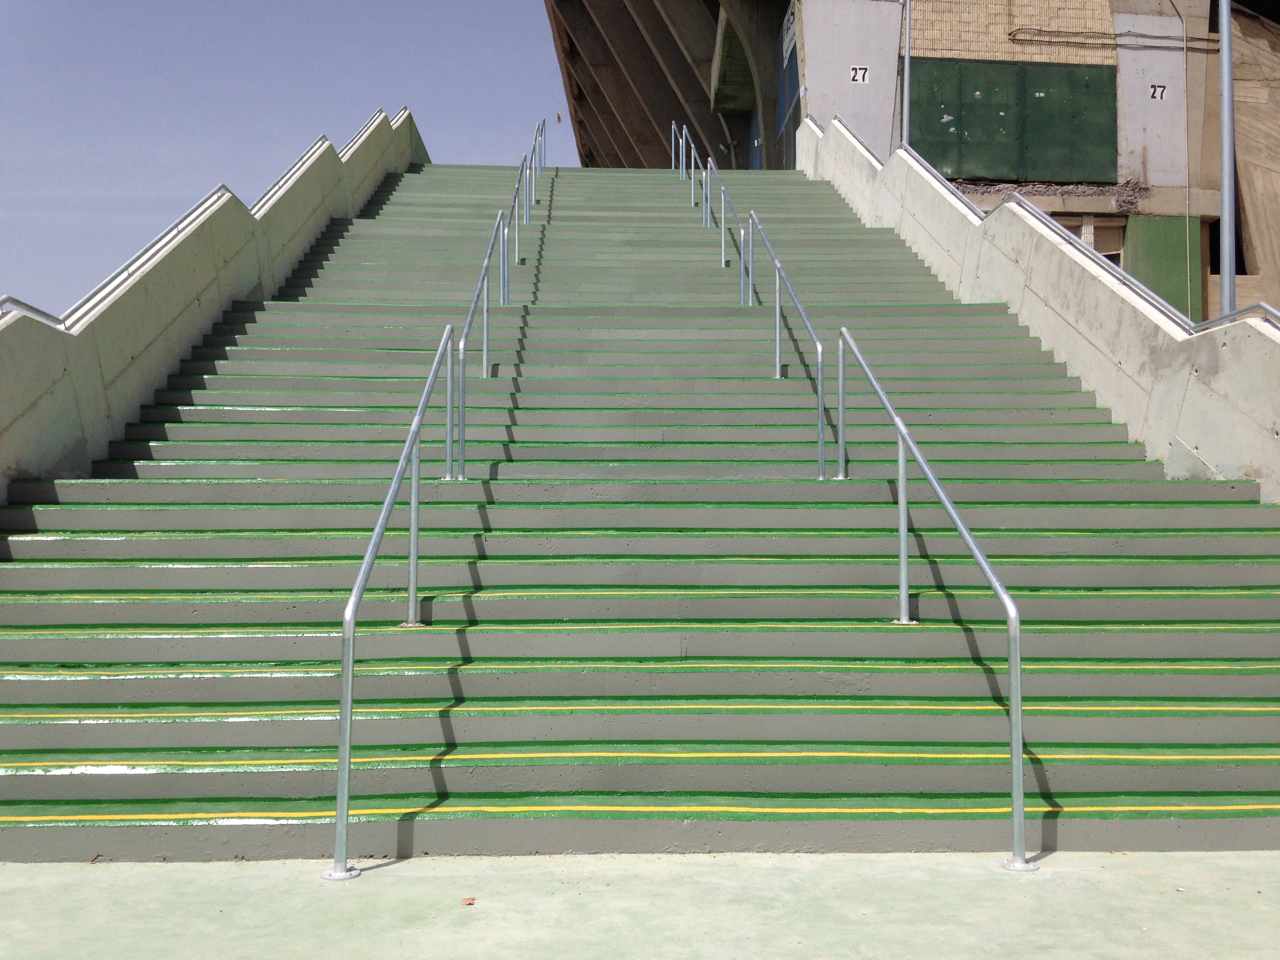 Escalera de acceso al estadio Benito Villamarín